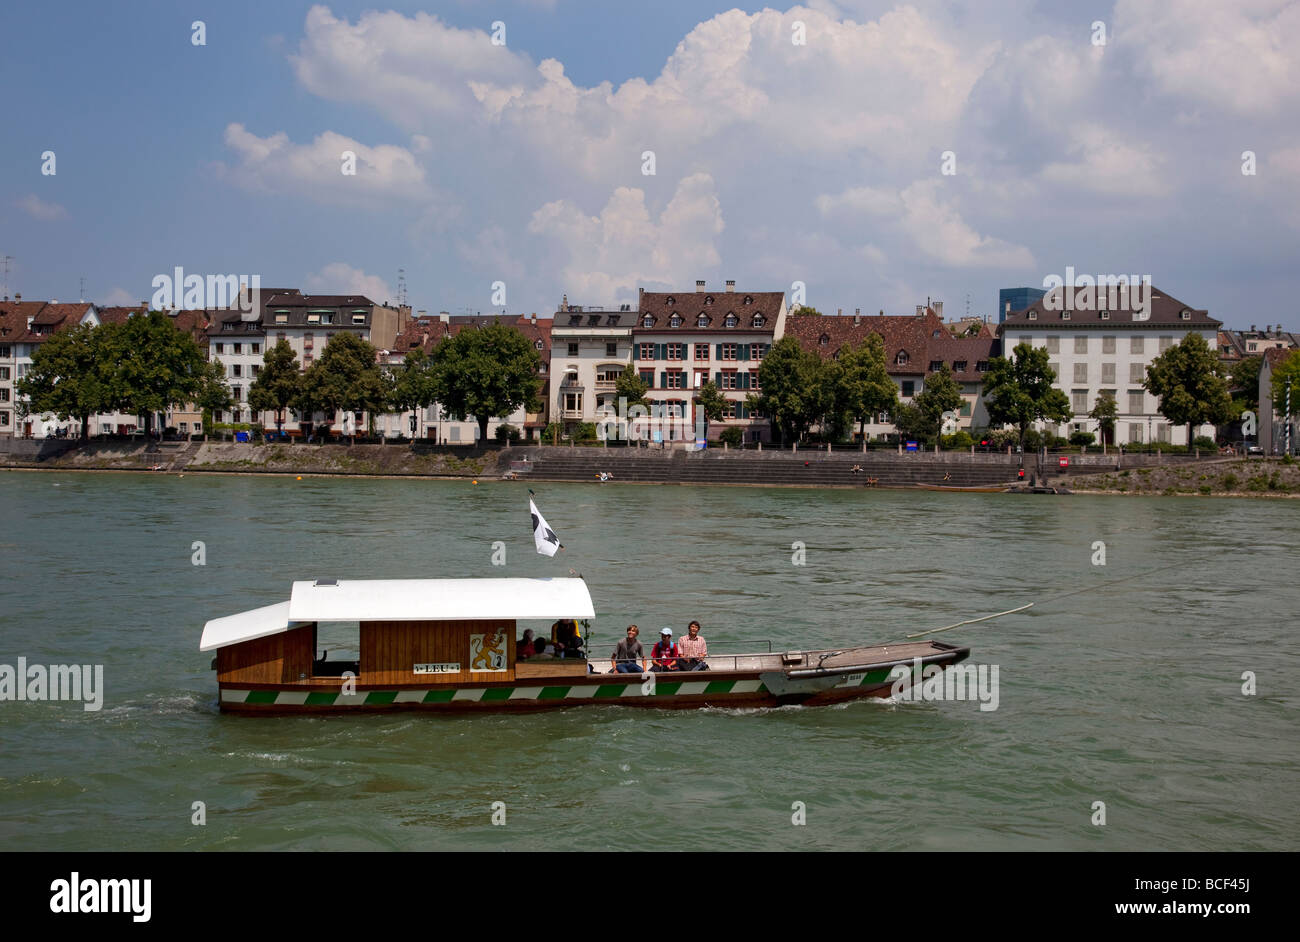 Fluss und Rhein Fähre Fahrgastschiff, Rheinpromenade, Basel, Schweiz, Europa. Stockfoto